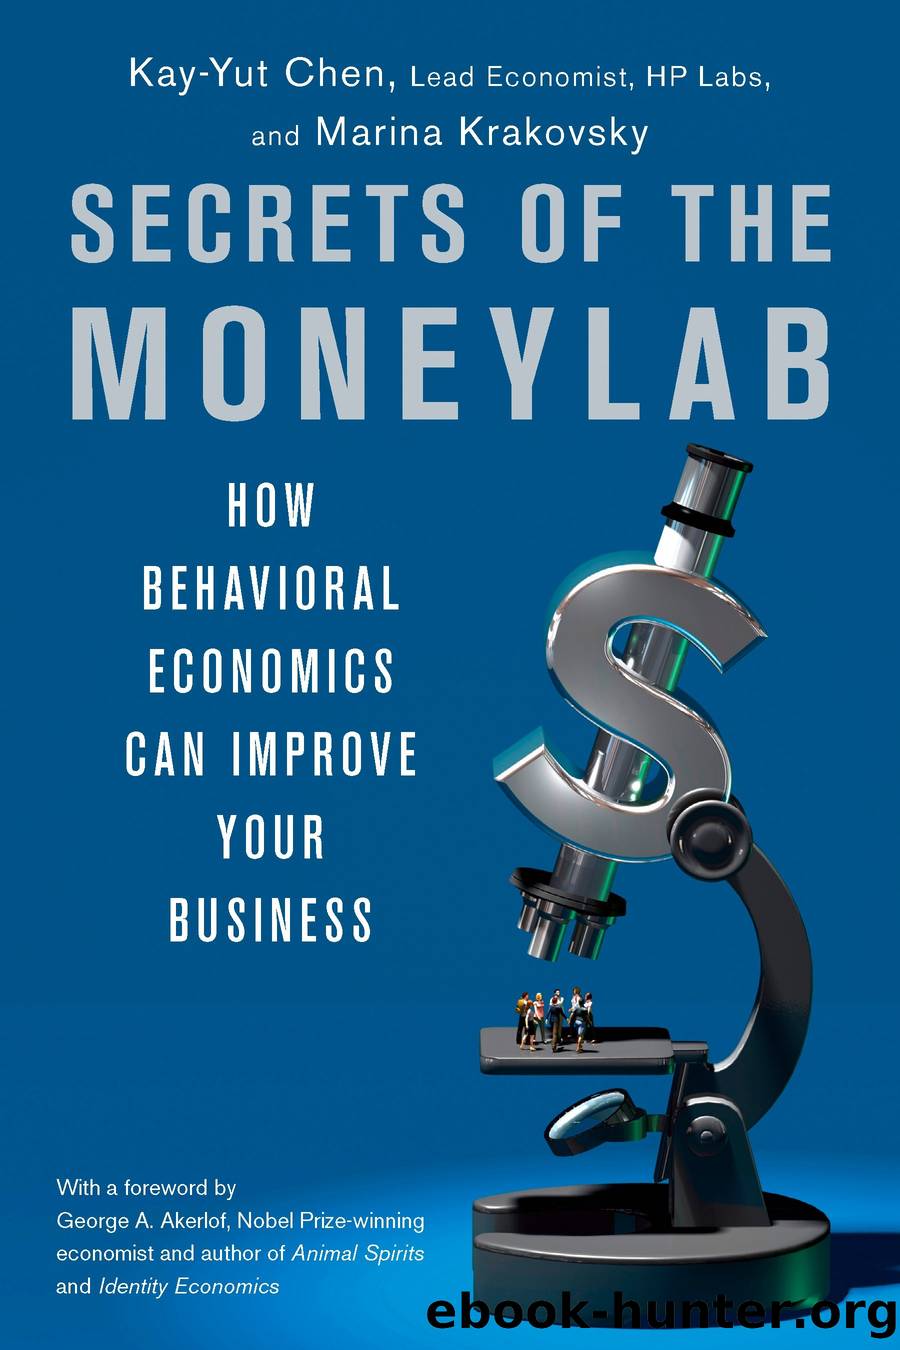 Secrets of the Moneylab by Kay-Yut Chen Marina Krakovsky